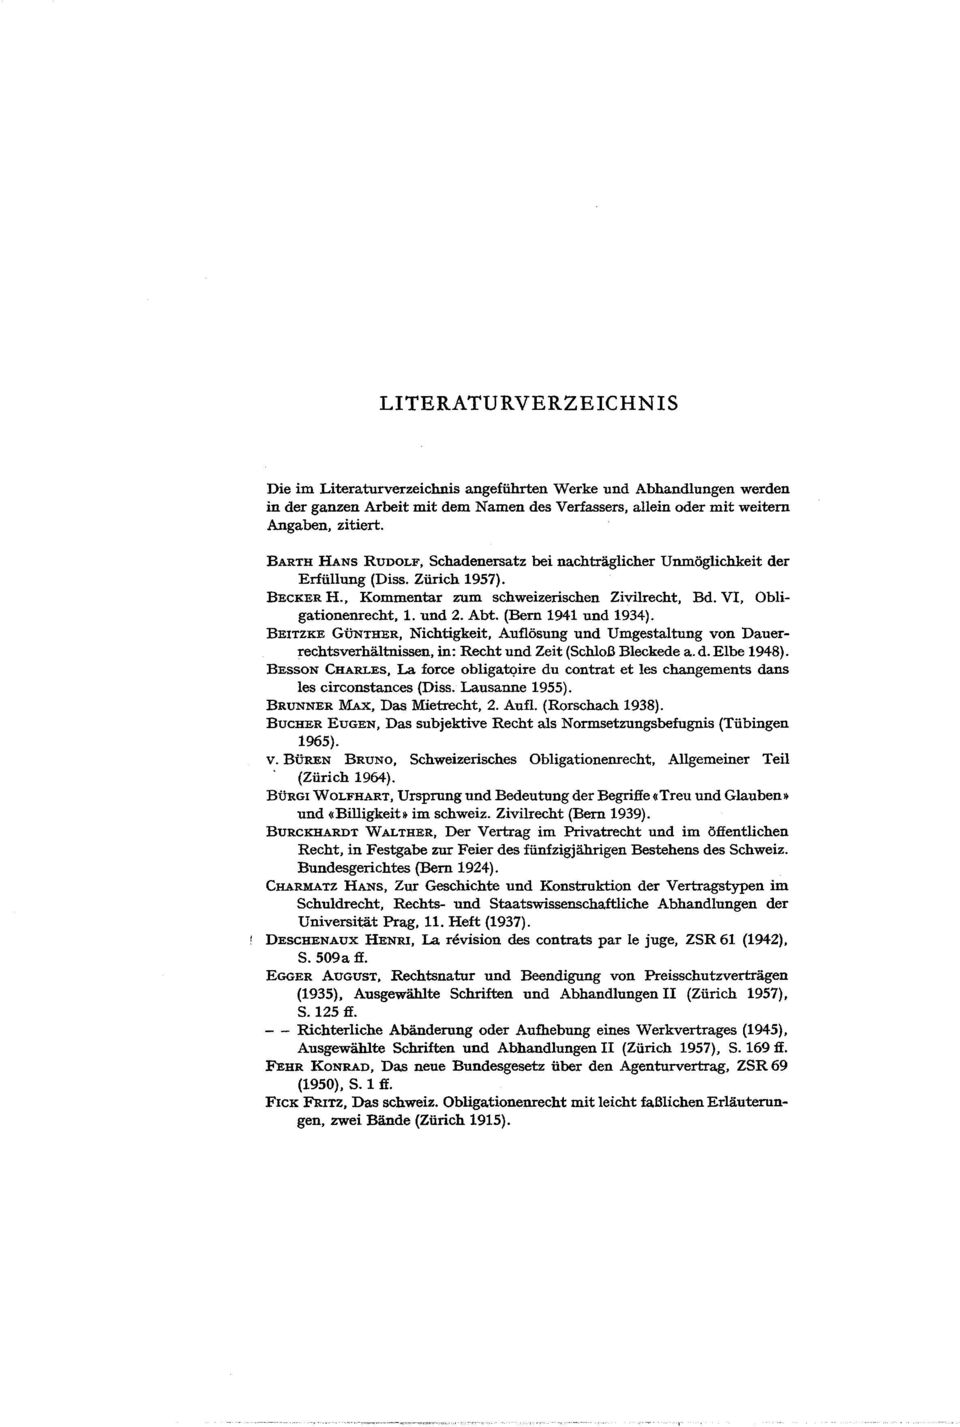 (Bem 1941 und 1934). BEITZKE GÜNTHER, Nichtigkeit, Auflösung und Umgestaltung von Dauerrechtsverhältnissen, in: Recht und Zeit (Schloß Bleckede a. d. EIbe 1948).